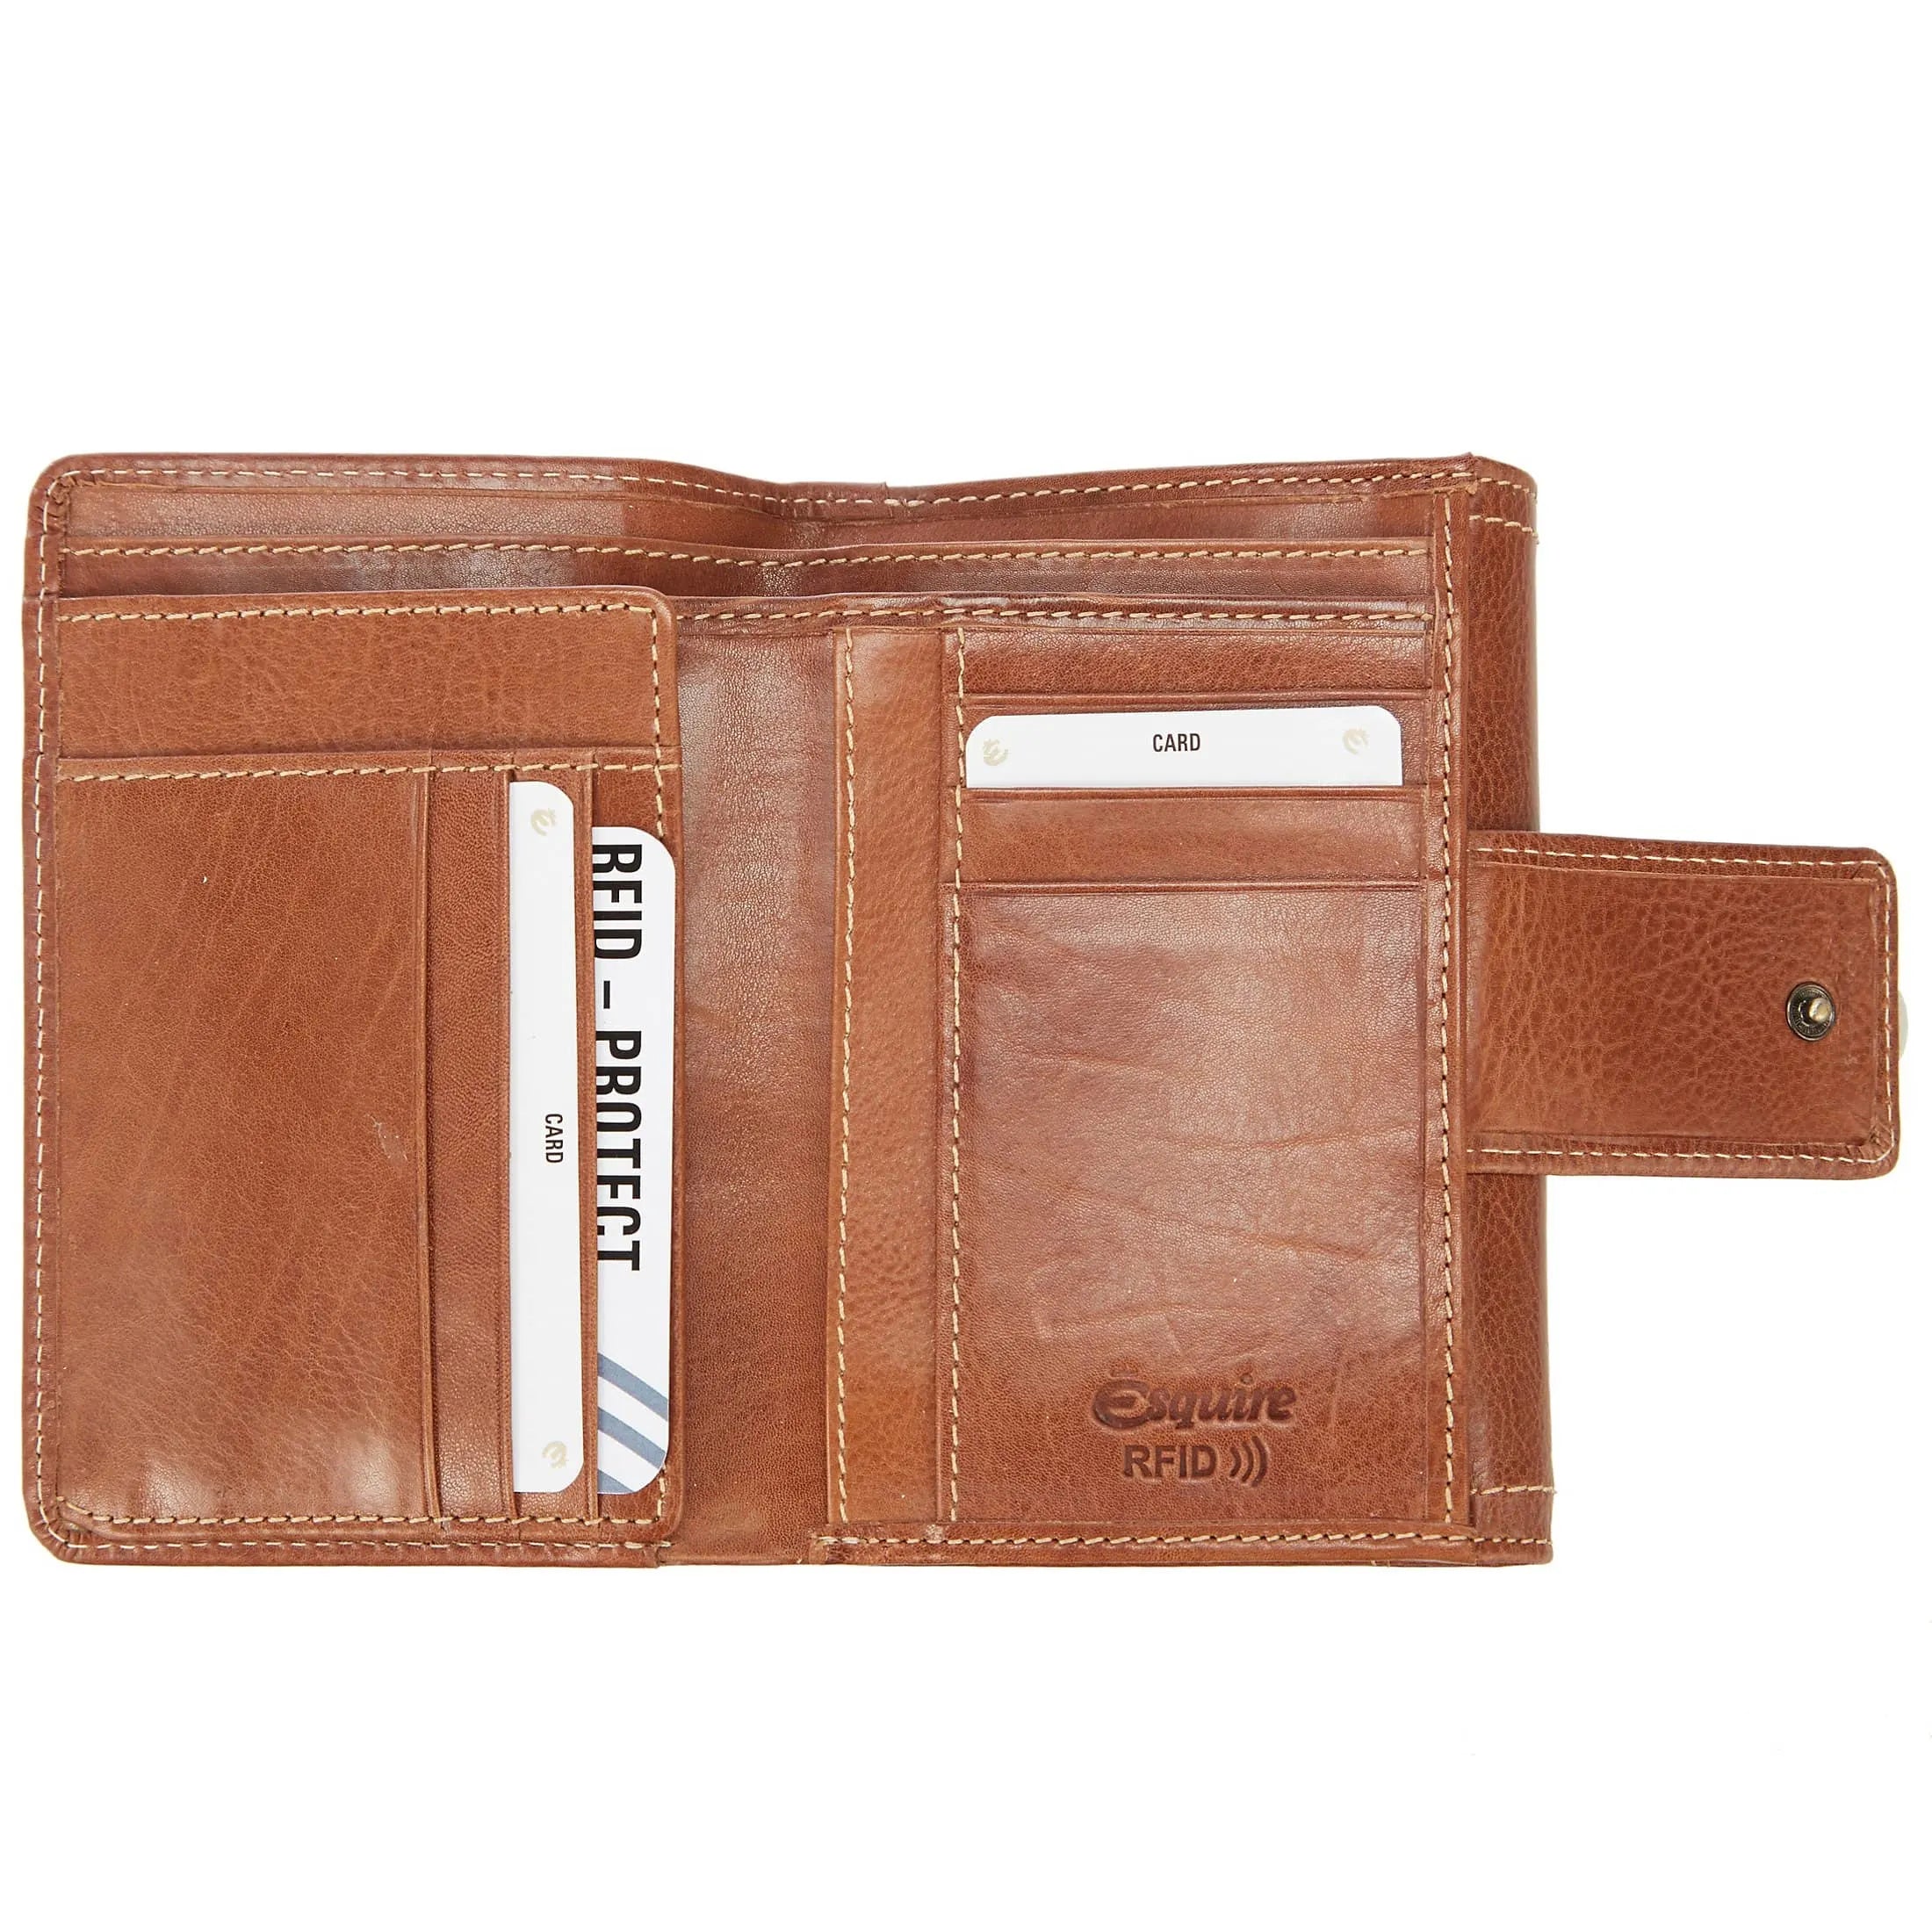 Esquire Denver RFID wallet 14 cm - cognac